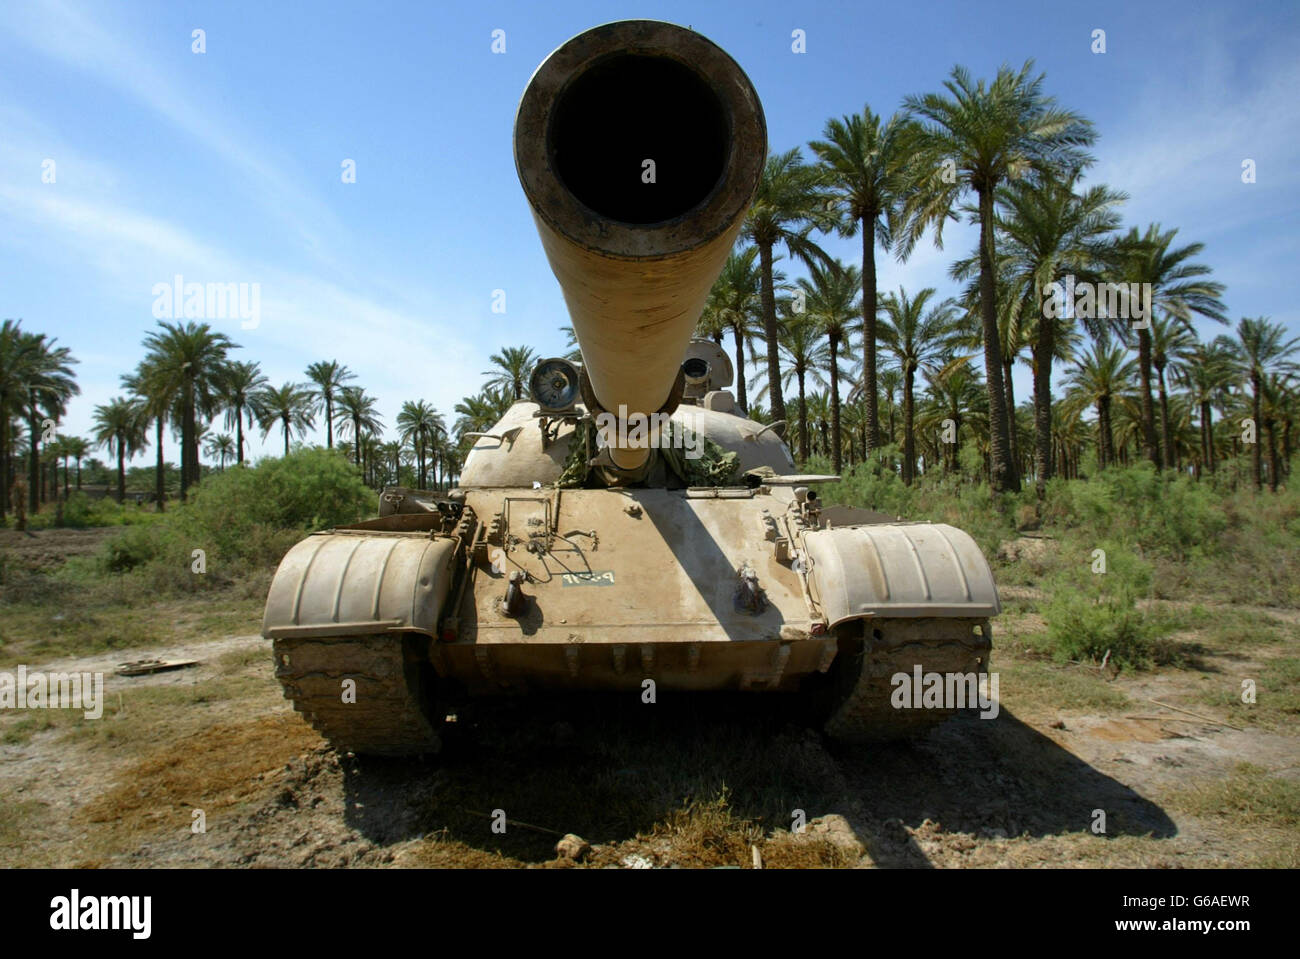 Abandoned tank Iraq Stock Photo